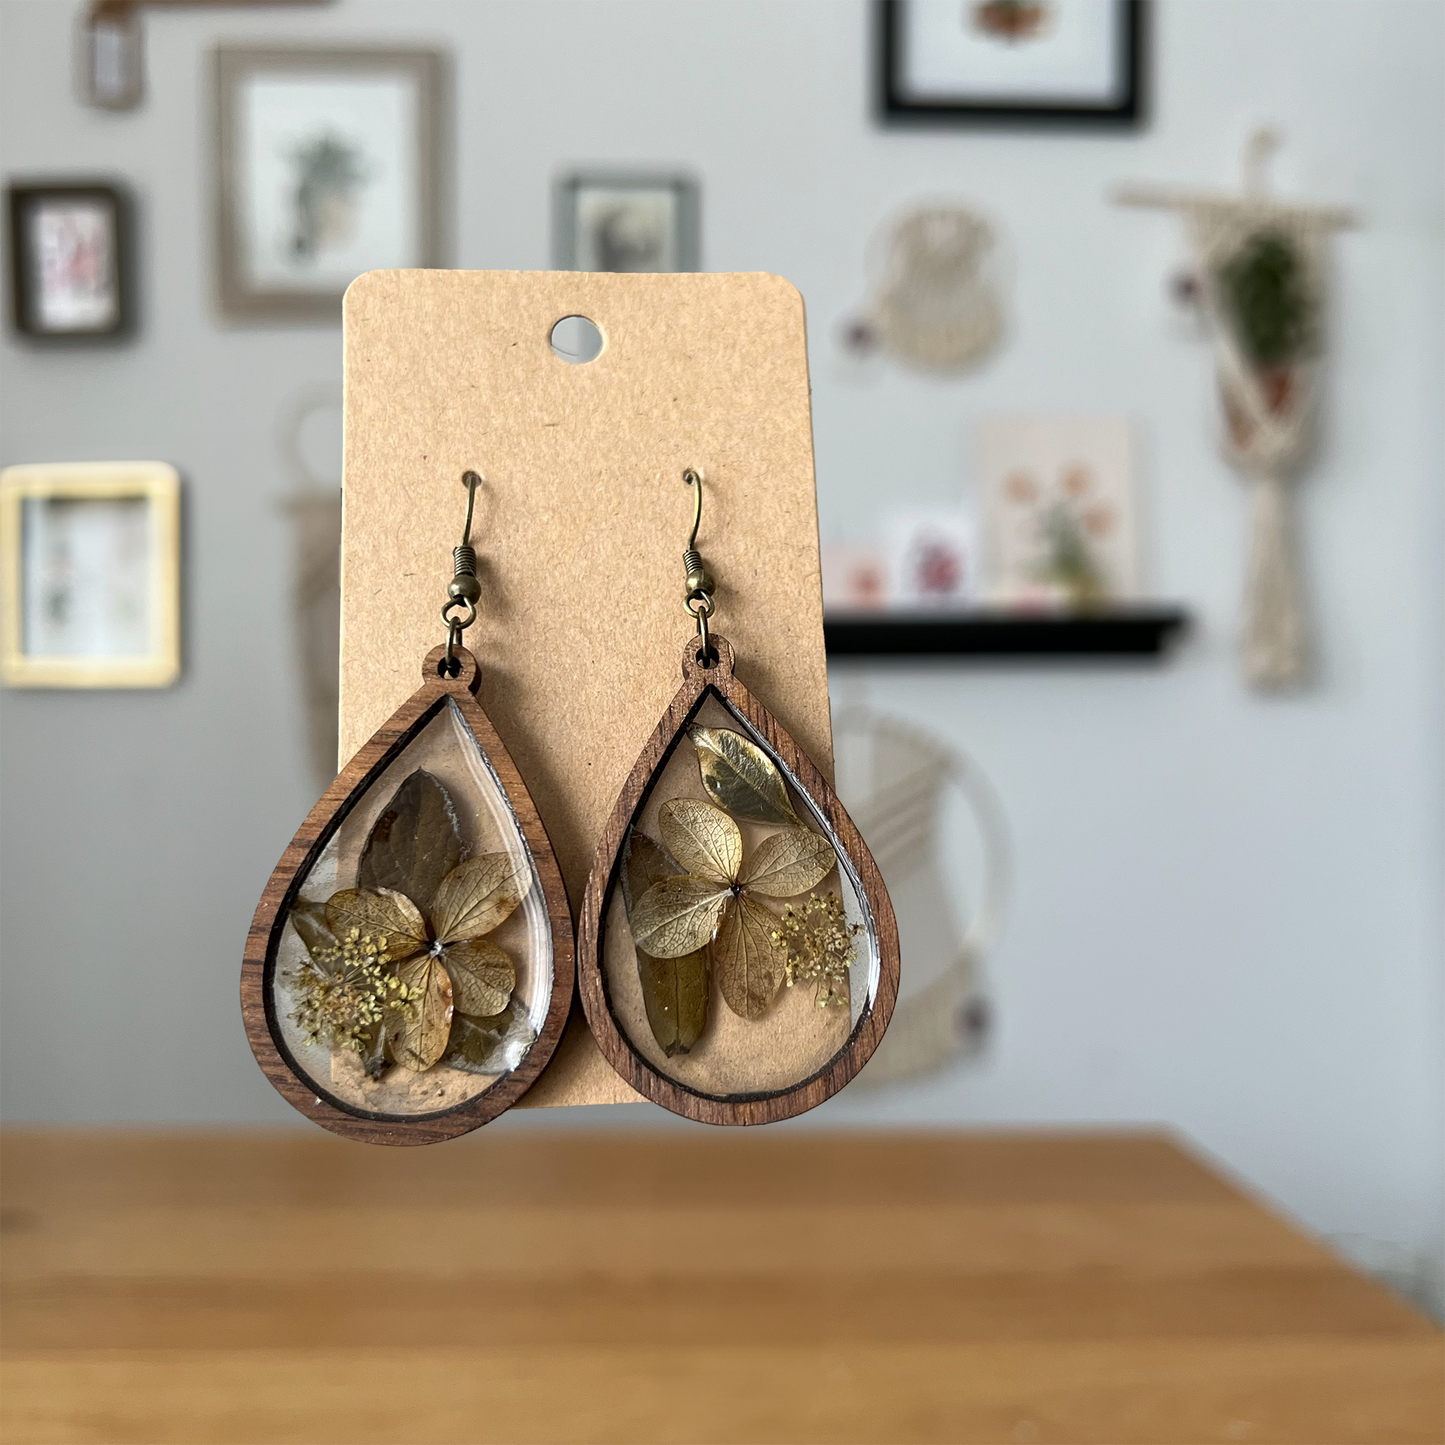 Hydrangea + Walnut Earrings | Refined Wood Co.